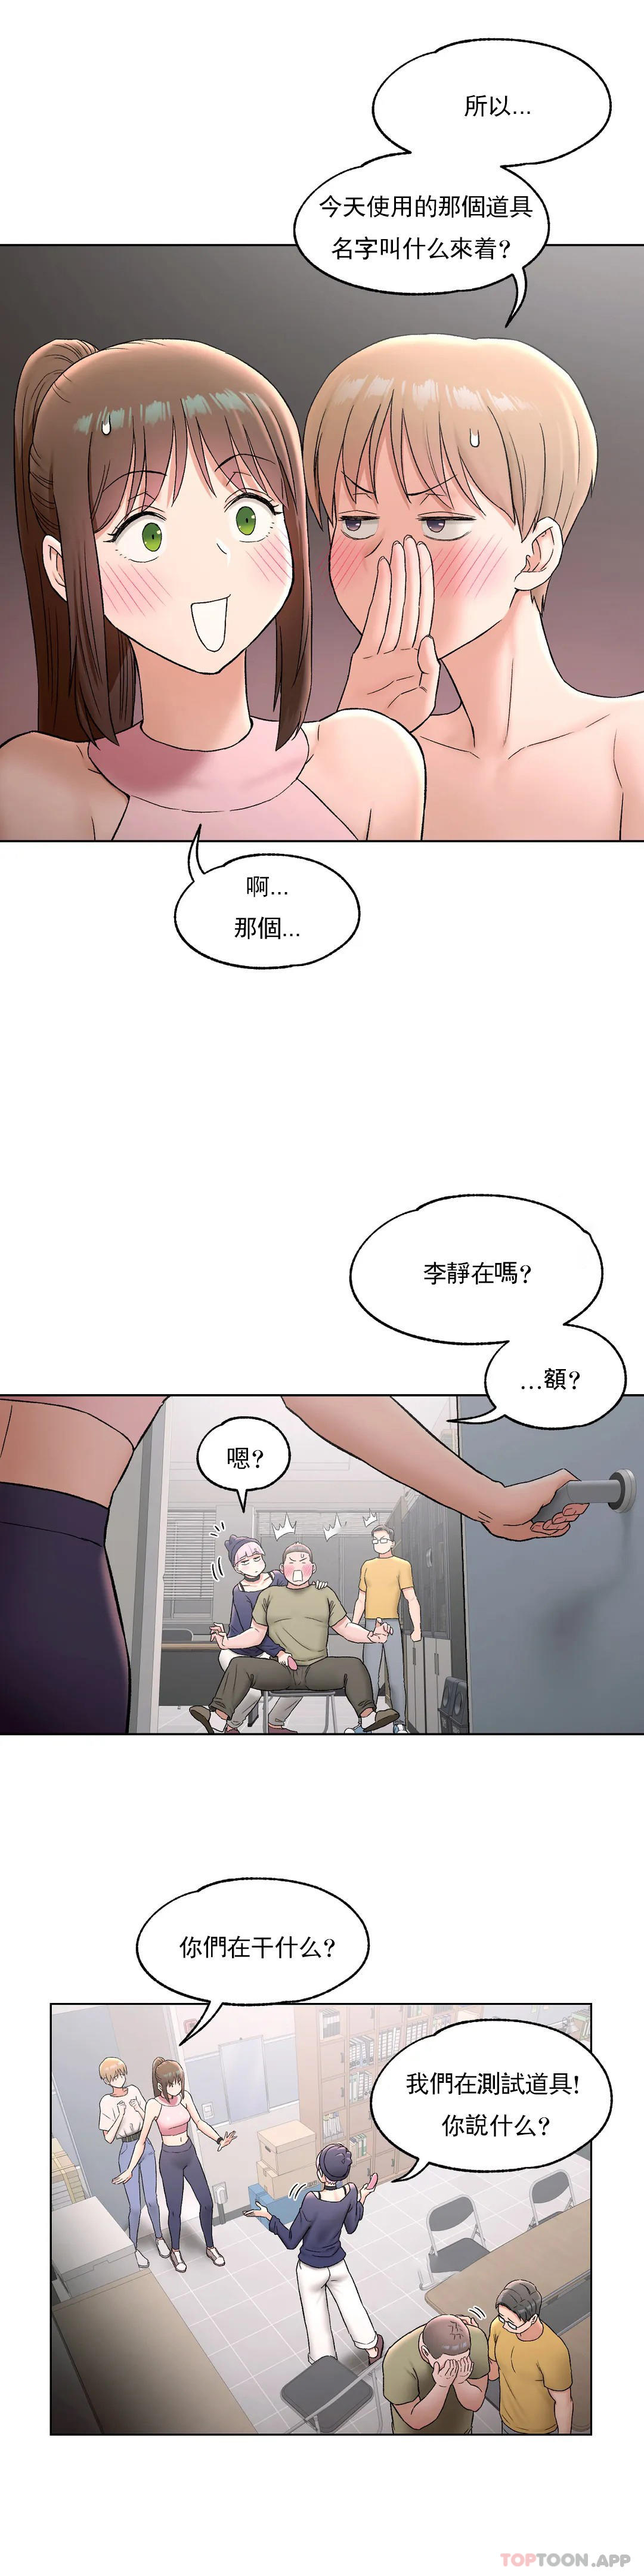 韩国污漫画 非常運動 第66话 20